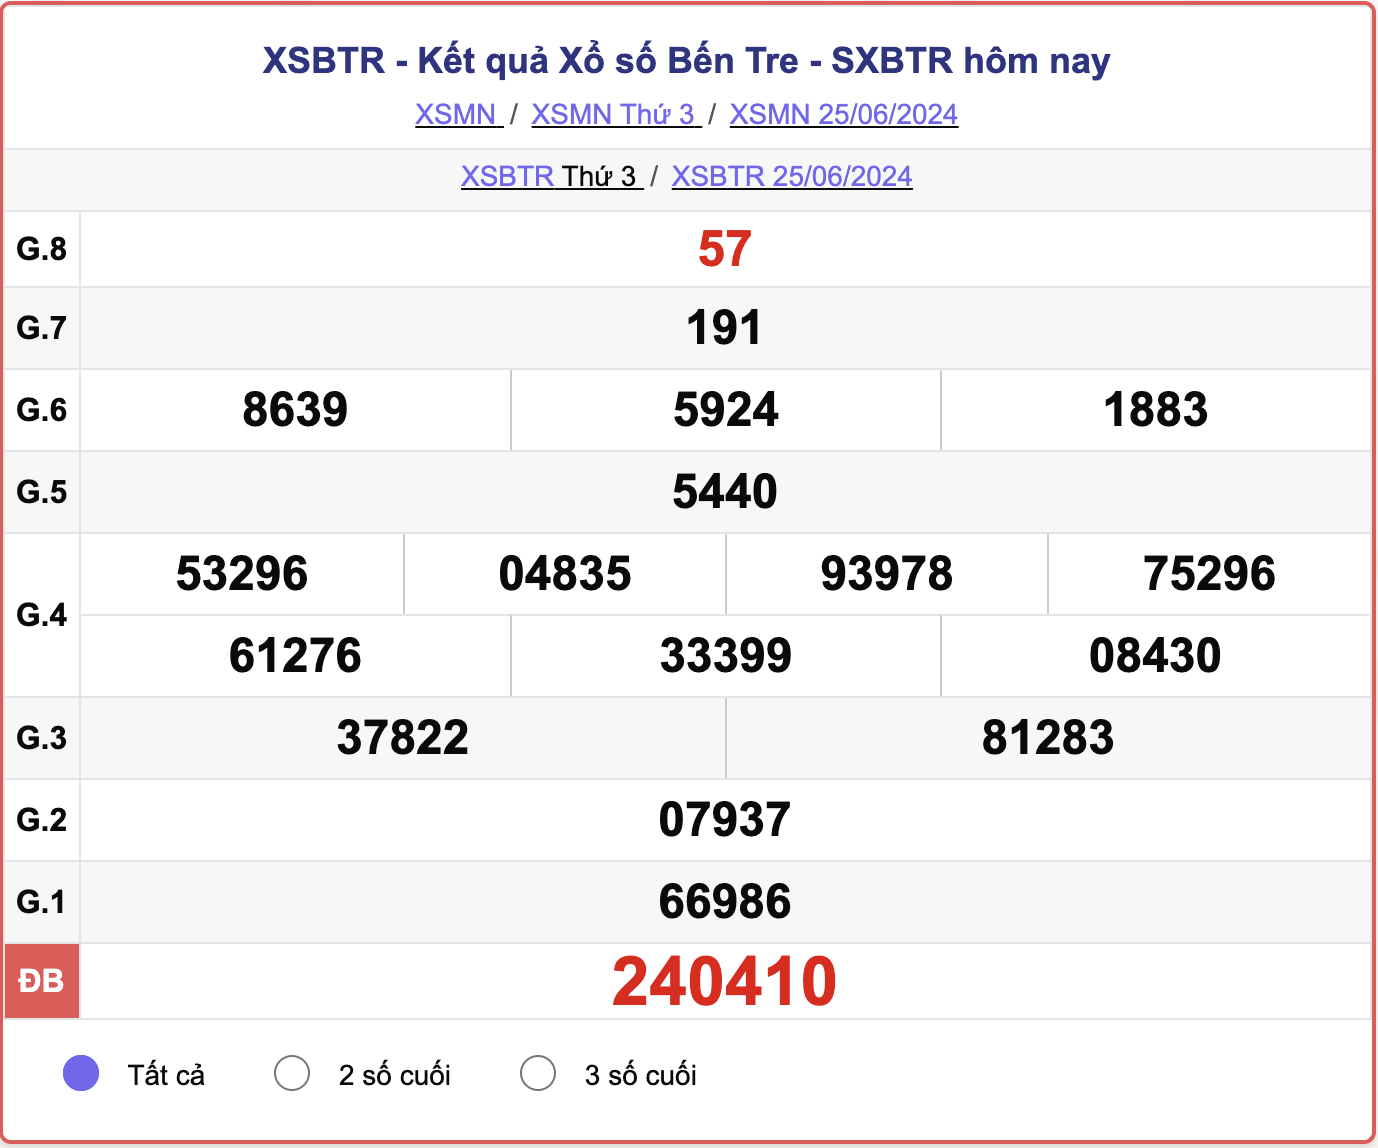 XSBTR 25/6, kết quả xổ số Bến Tre hôm nay 25/6/2024.